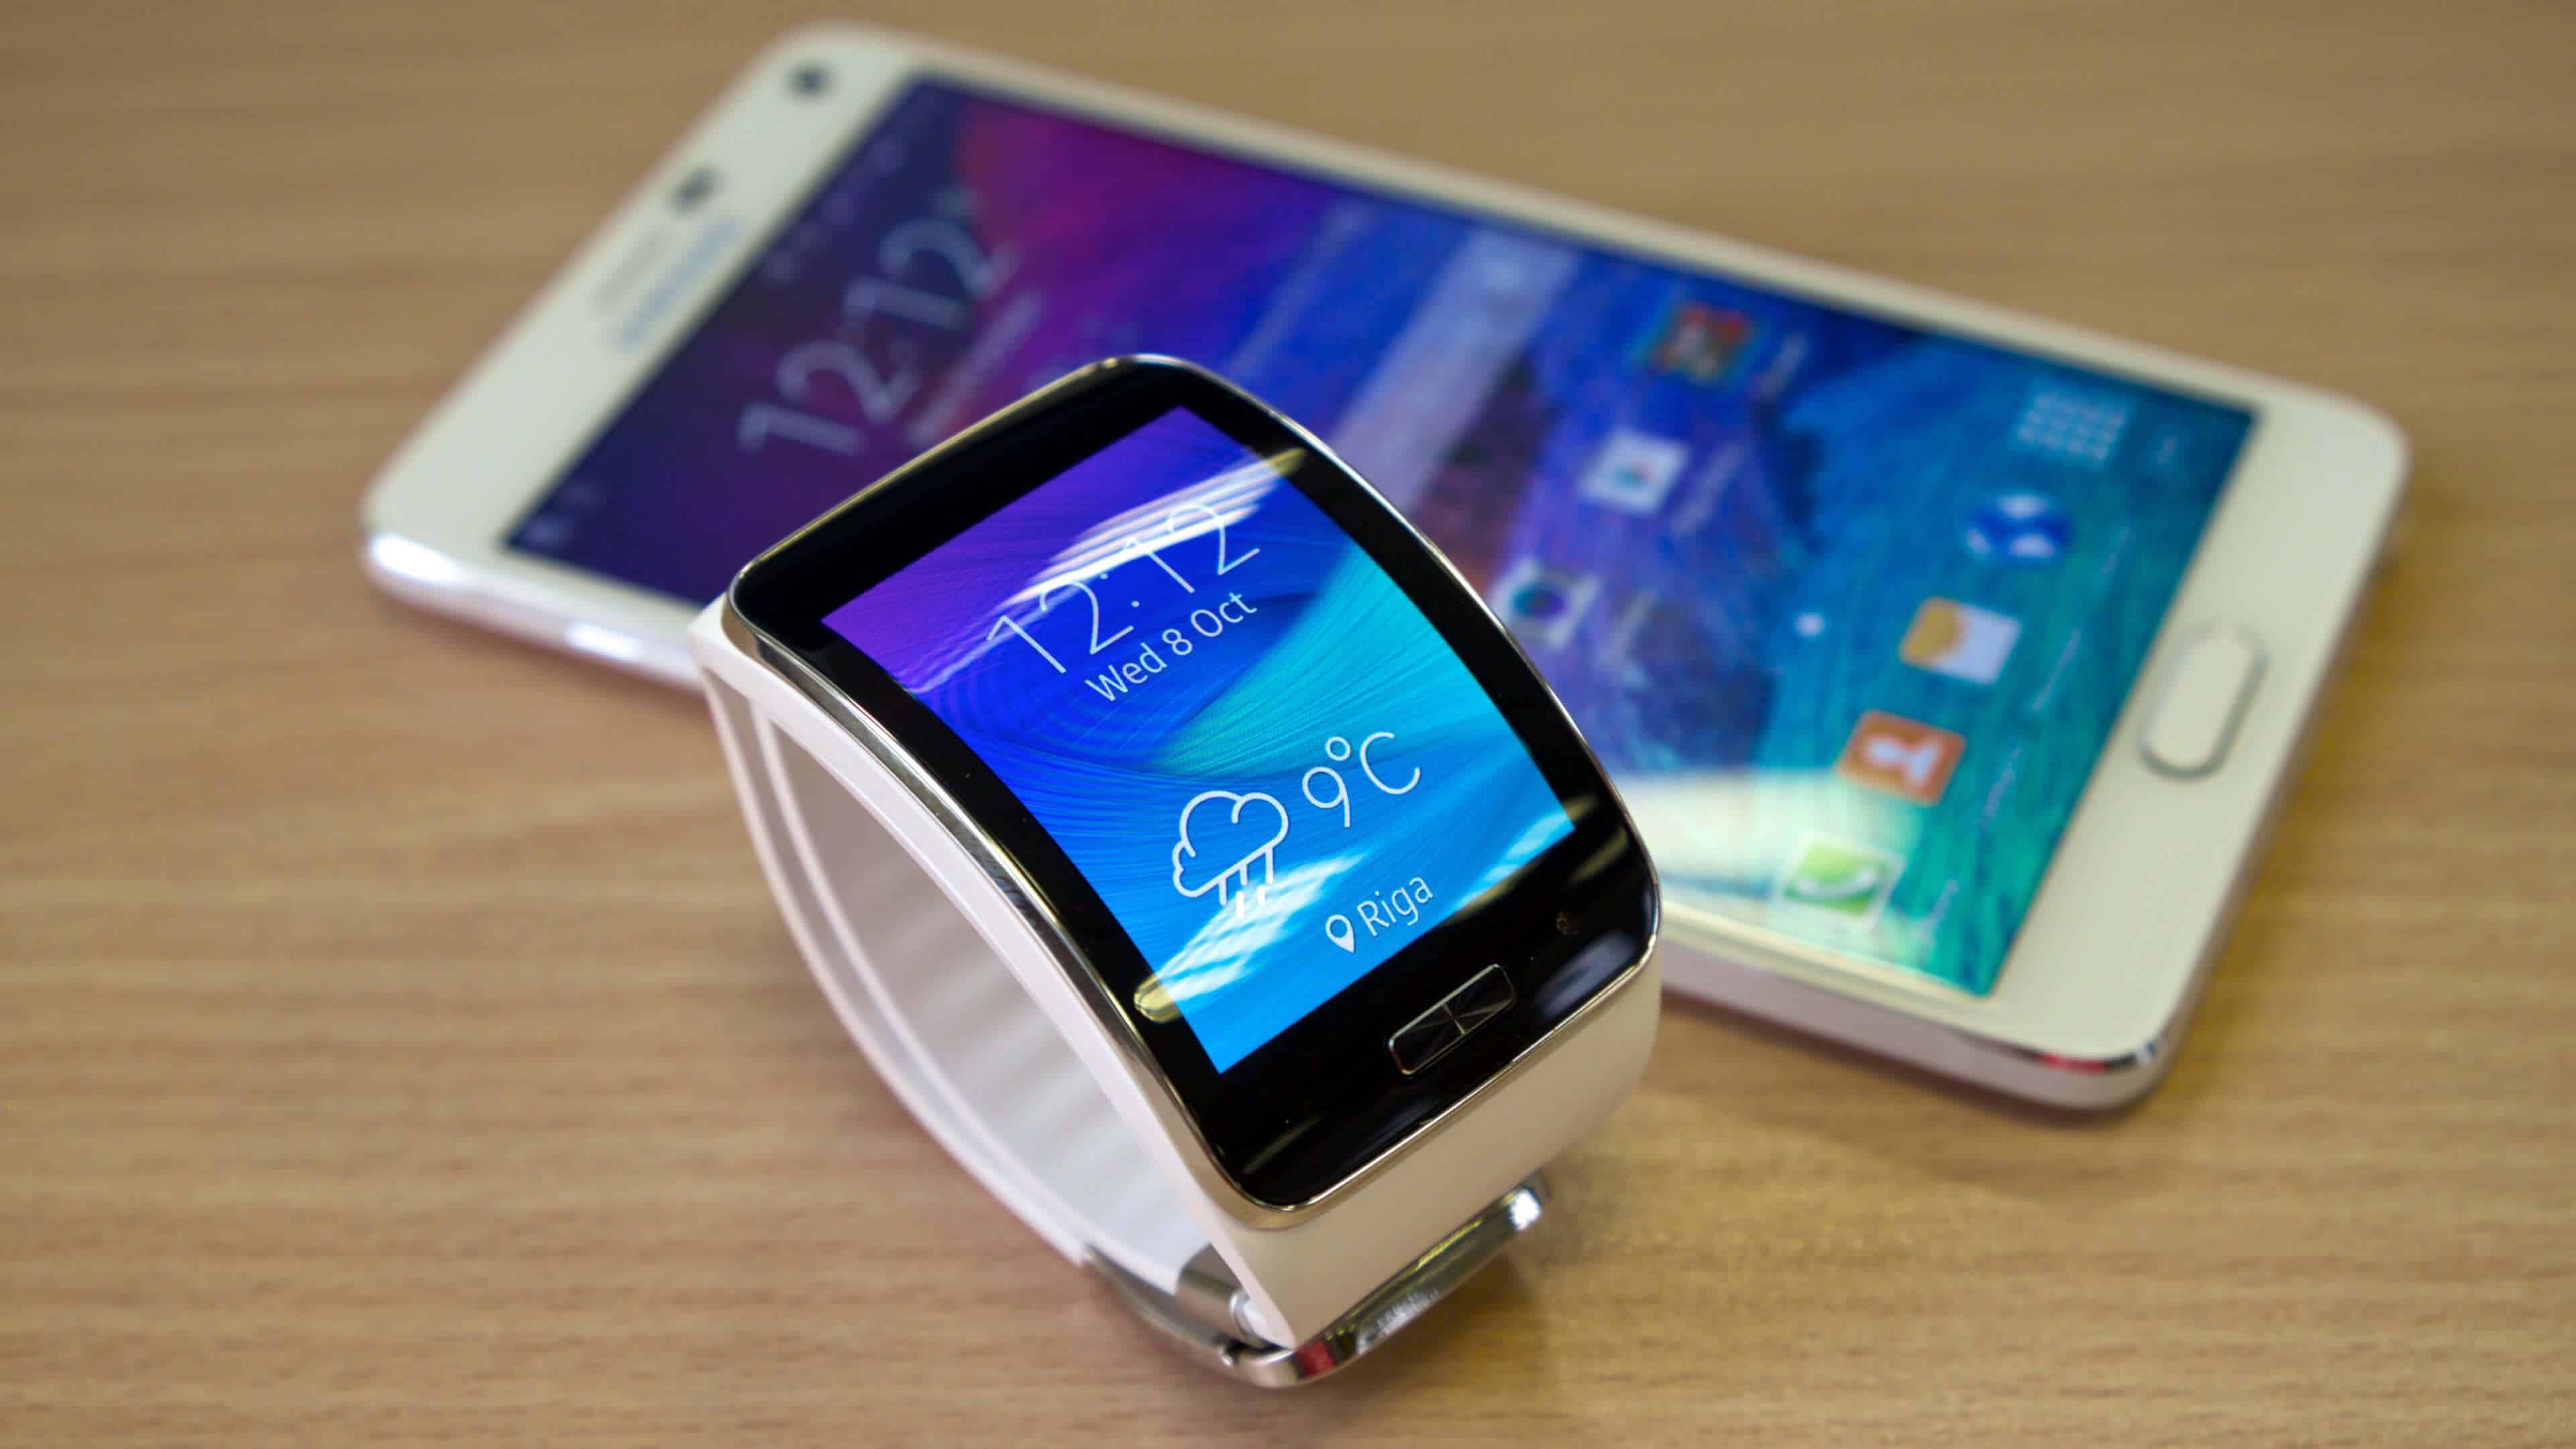 Samsung Smartwatch Uhd 4k Wallpaper , HD Wallpaper & Backgrounds